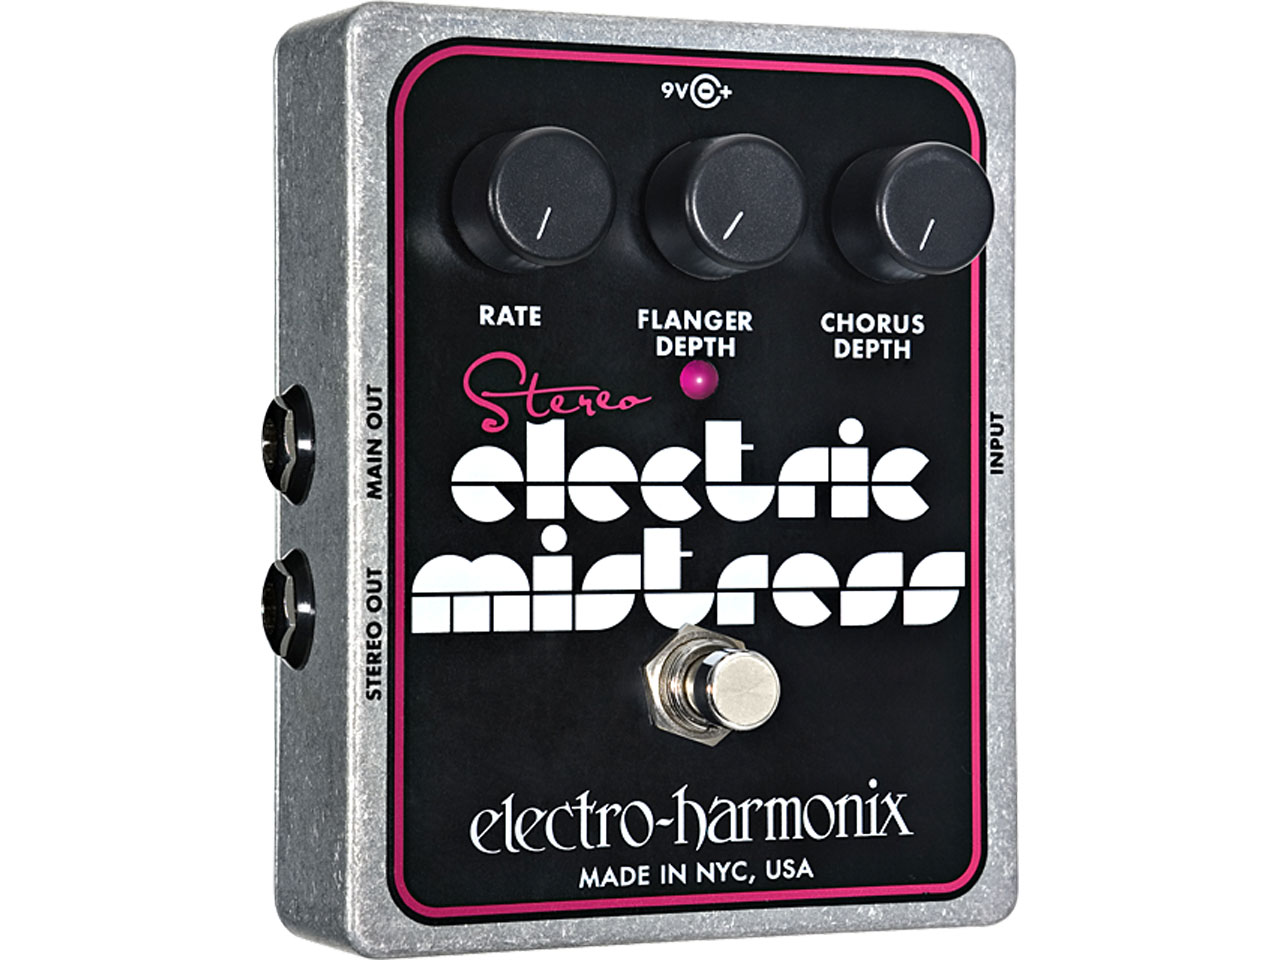 Electro-Harmonix(エレクトロハーモニックス) Stereo Electric Mistress Flanger/Chorus (コーラス/フランジャー)